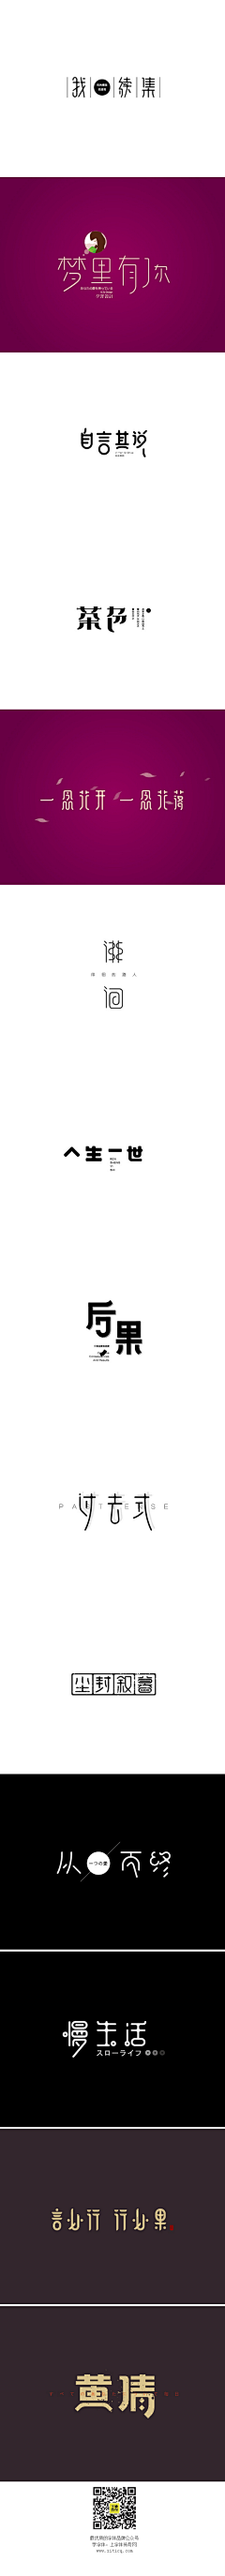 残梦諾谶采集到中文logo